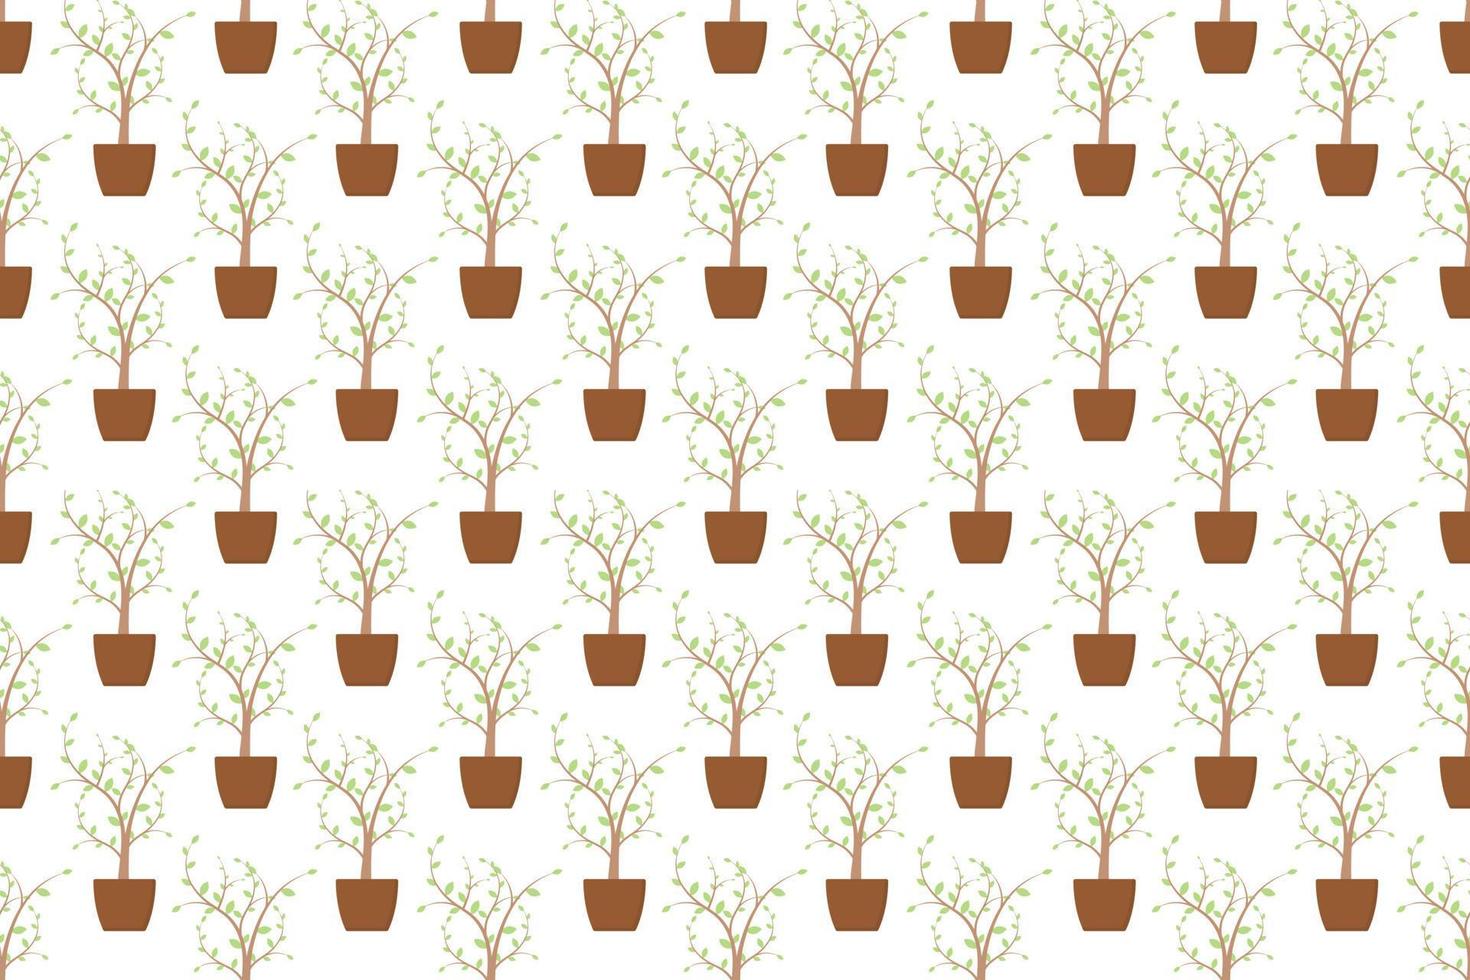 Pflanze im nahtlosen Muster des Topfes auf weißem Hintergrundvektordesign vektor